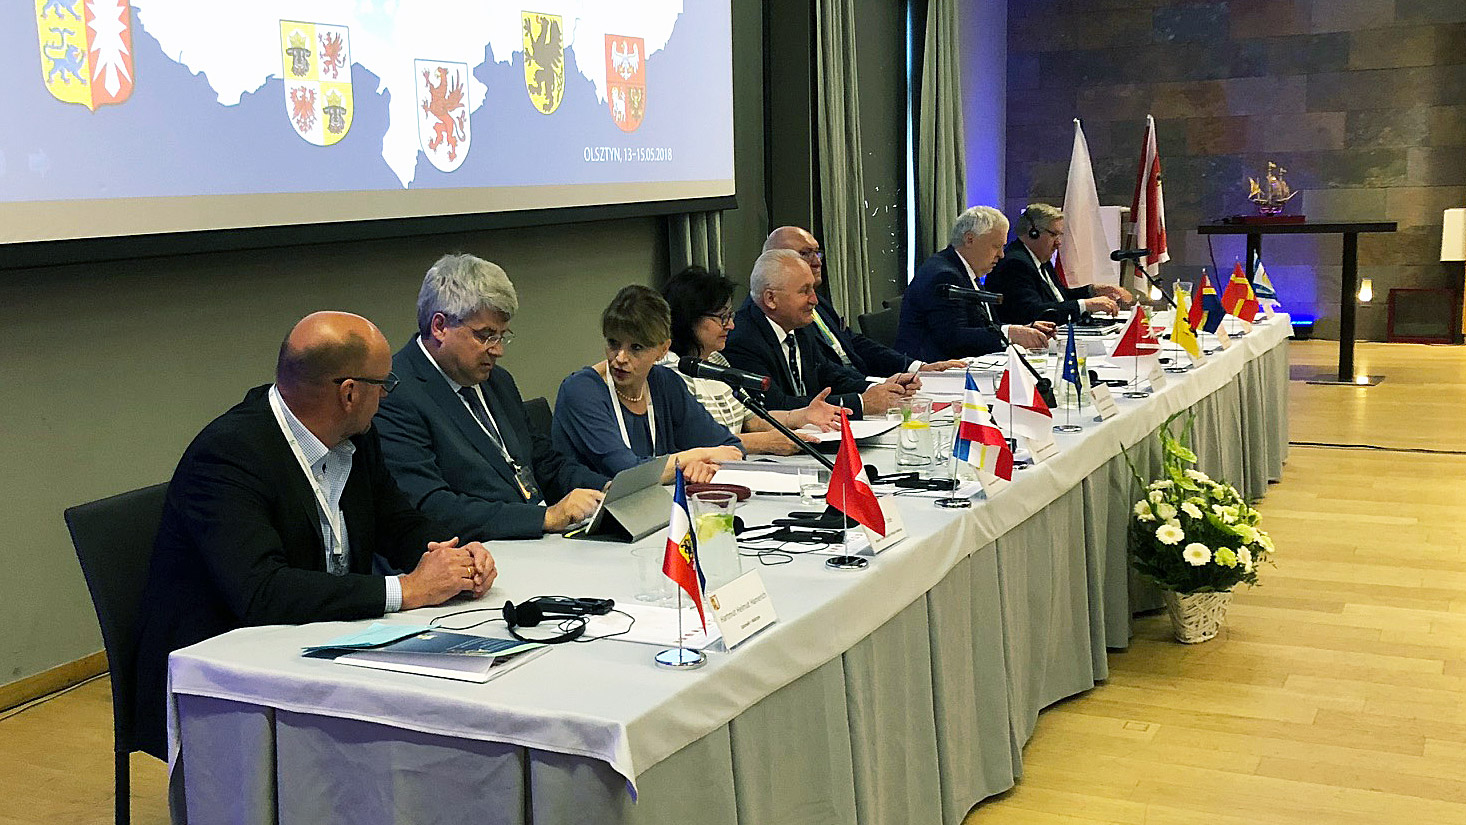 Teilnehmer des Parlamentsforums Südliche Ostsee am Konferenztisch